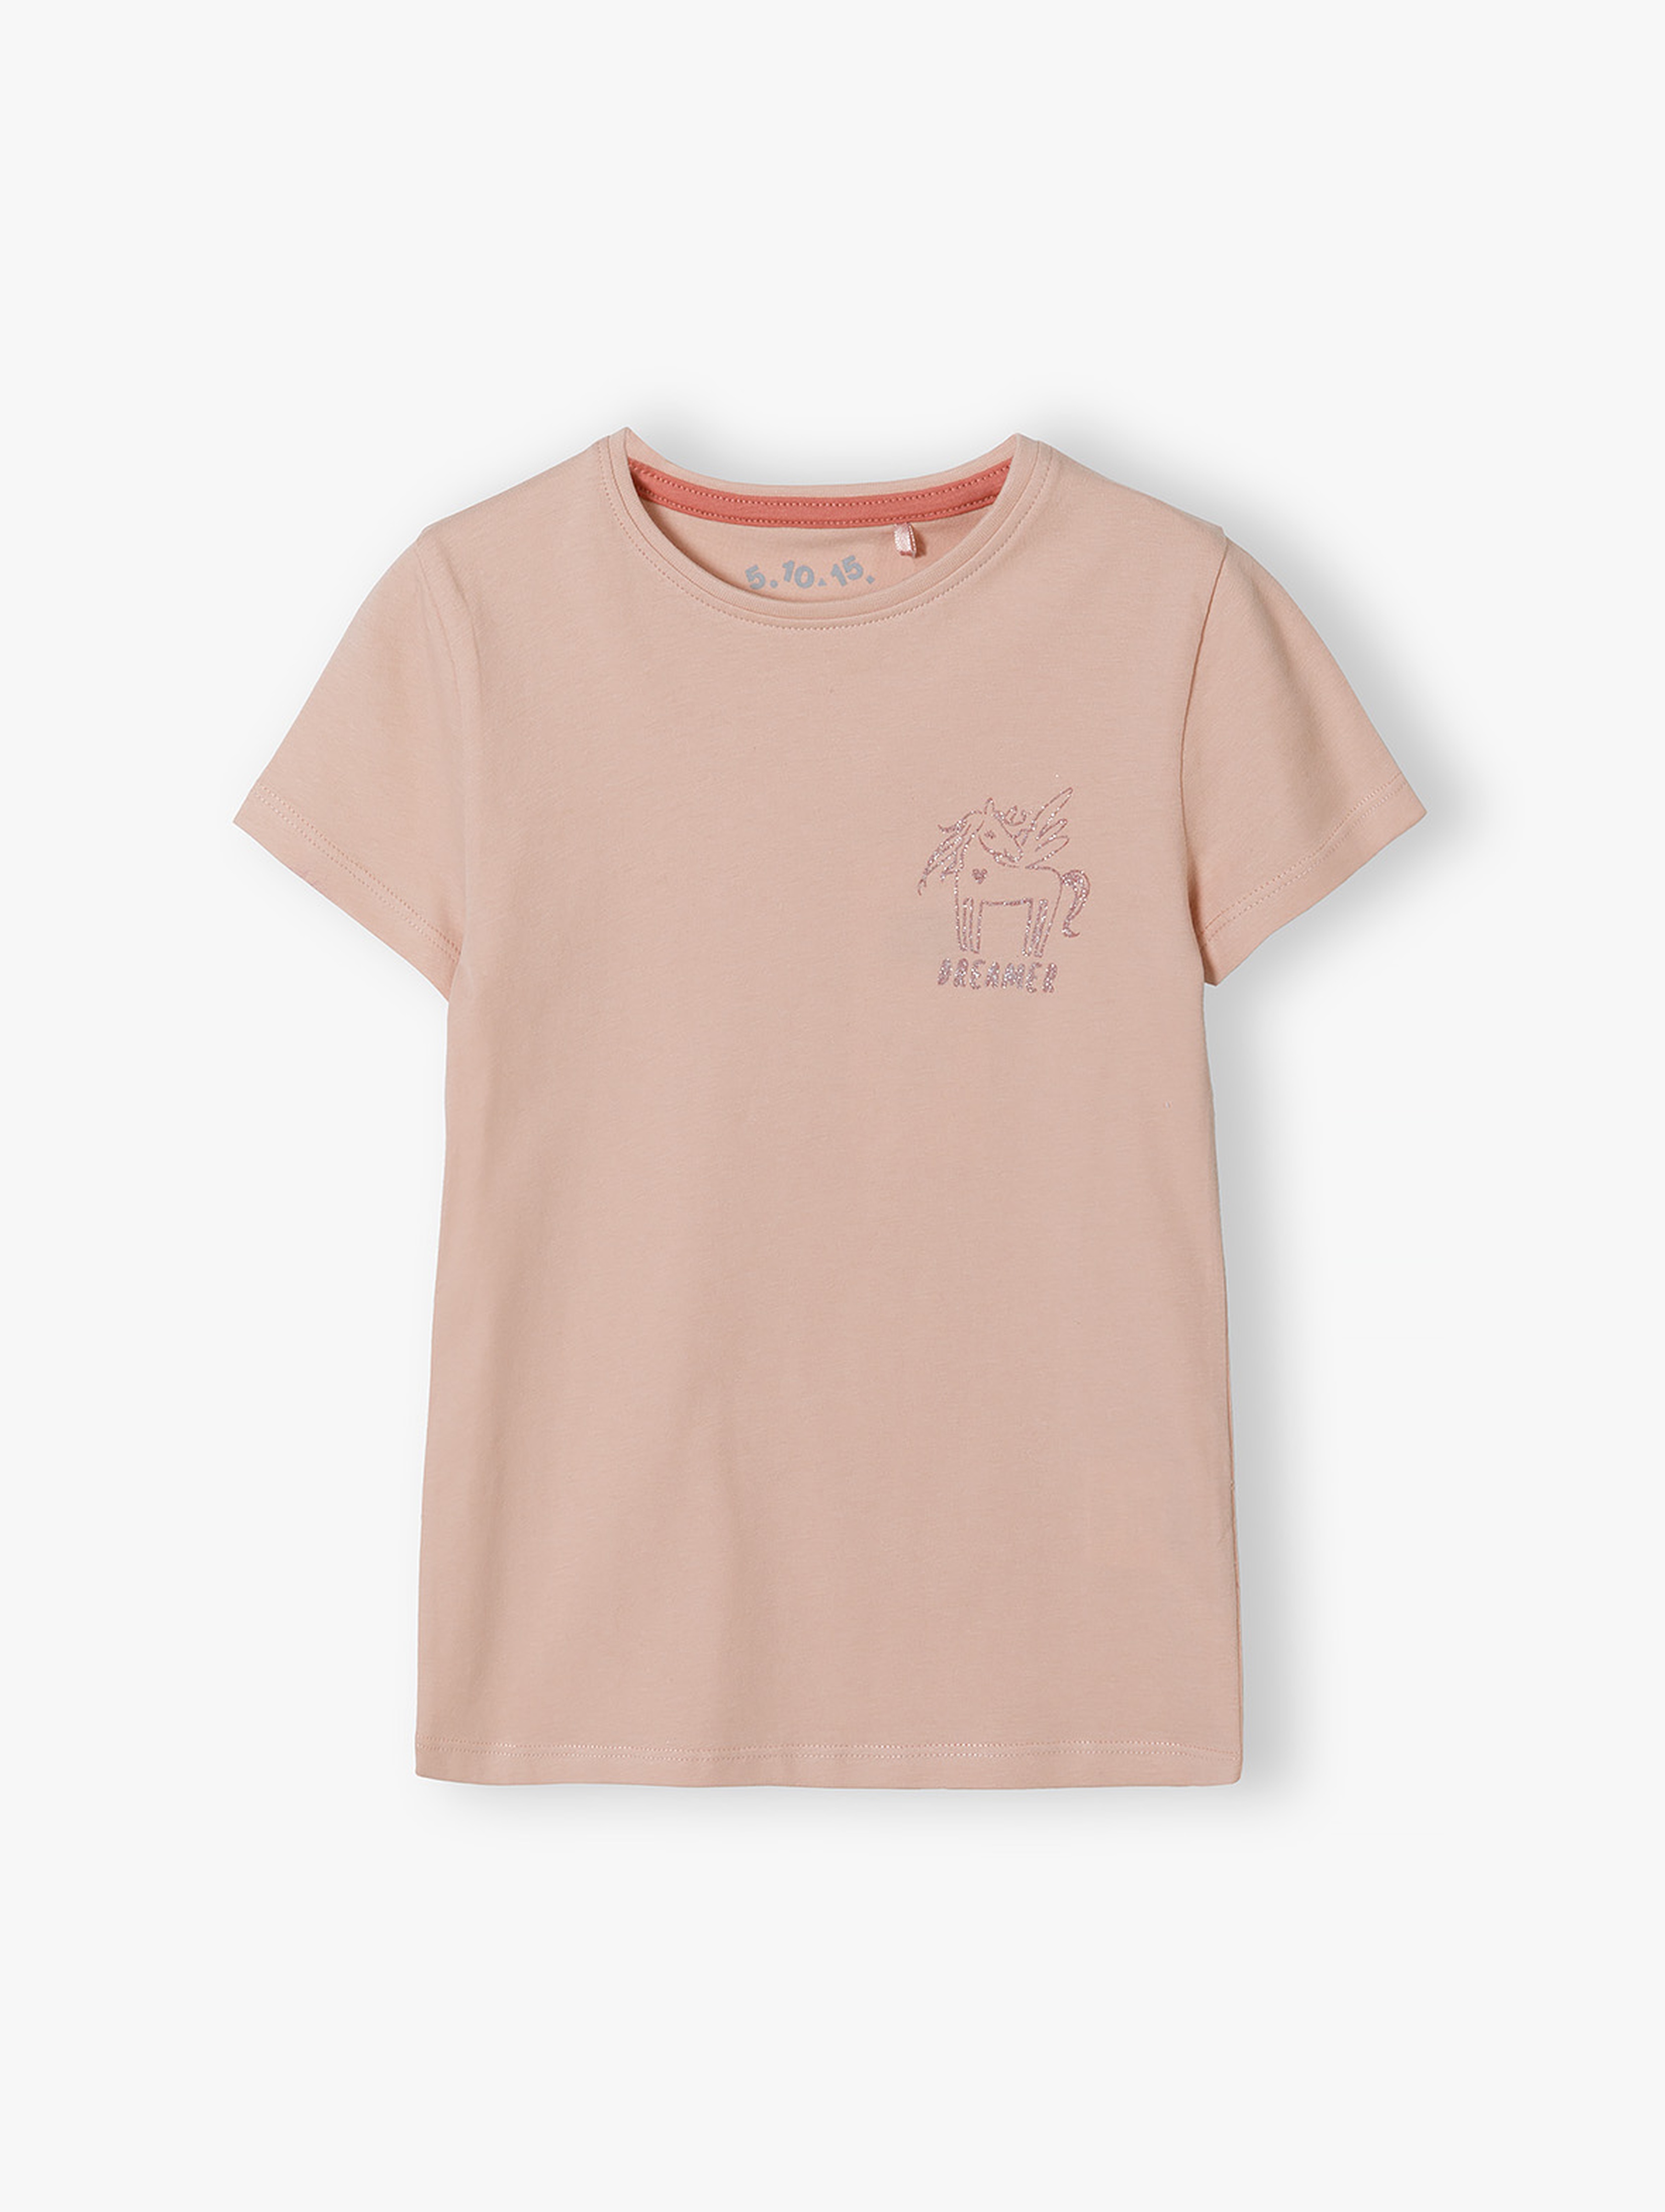 Różowa koszulka dla dziewczynki z brokatowym jednorożcem